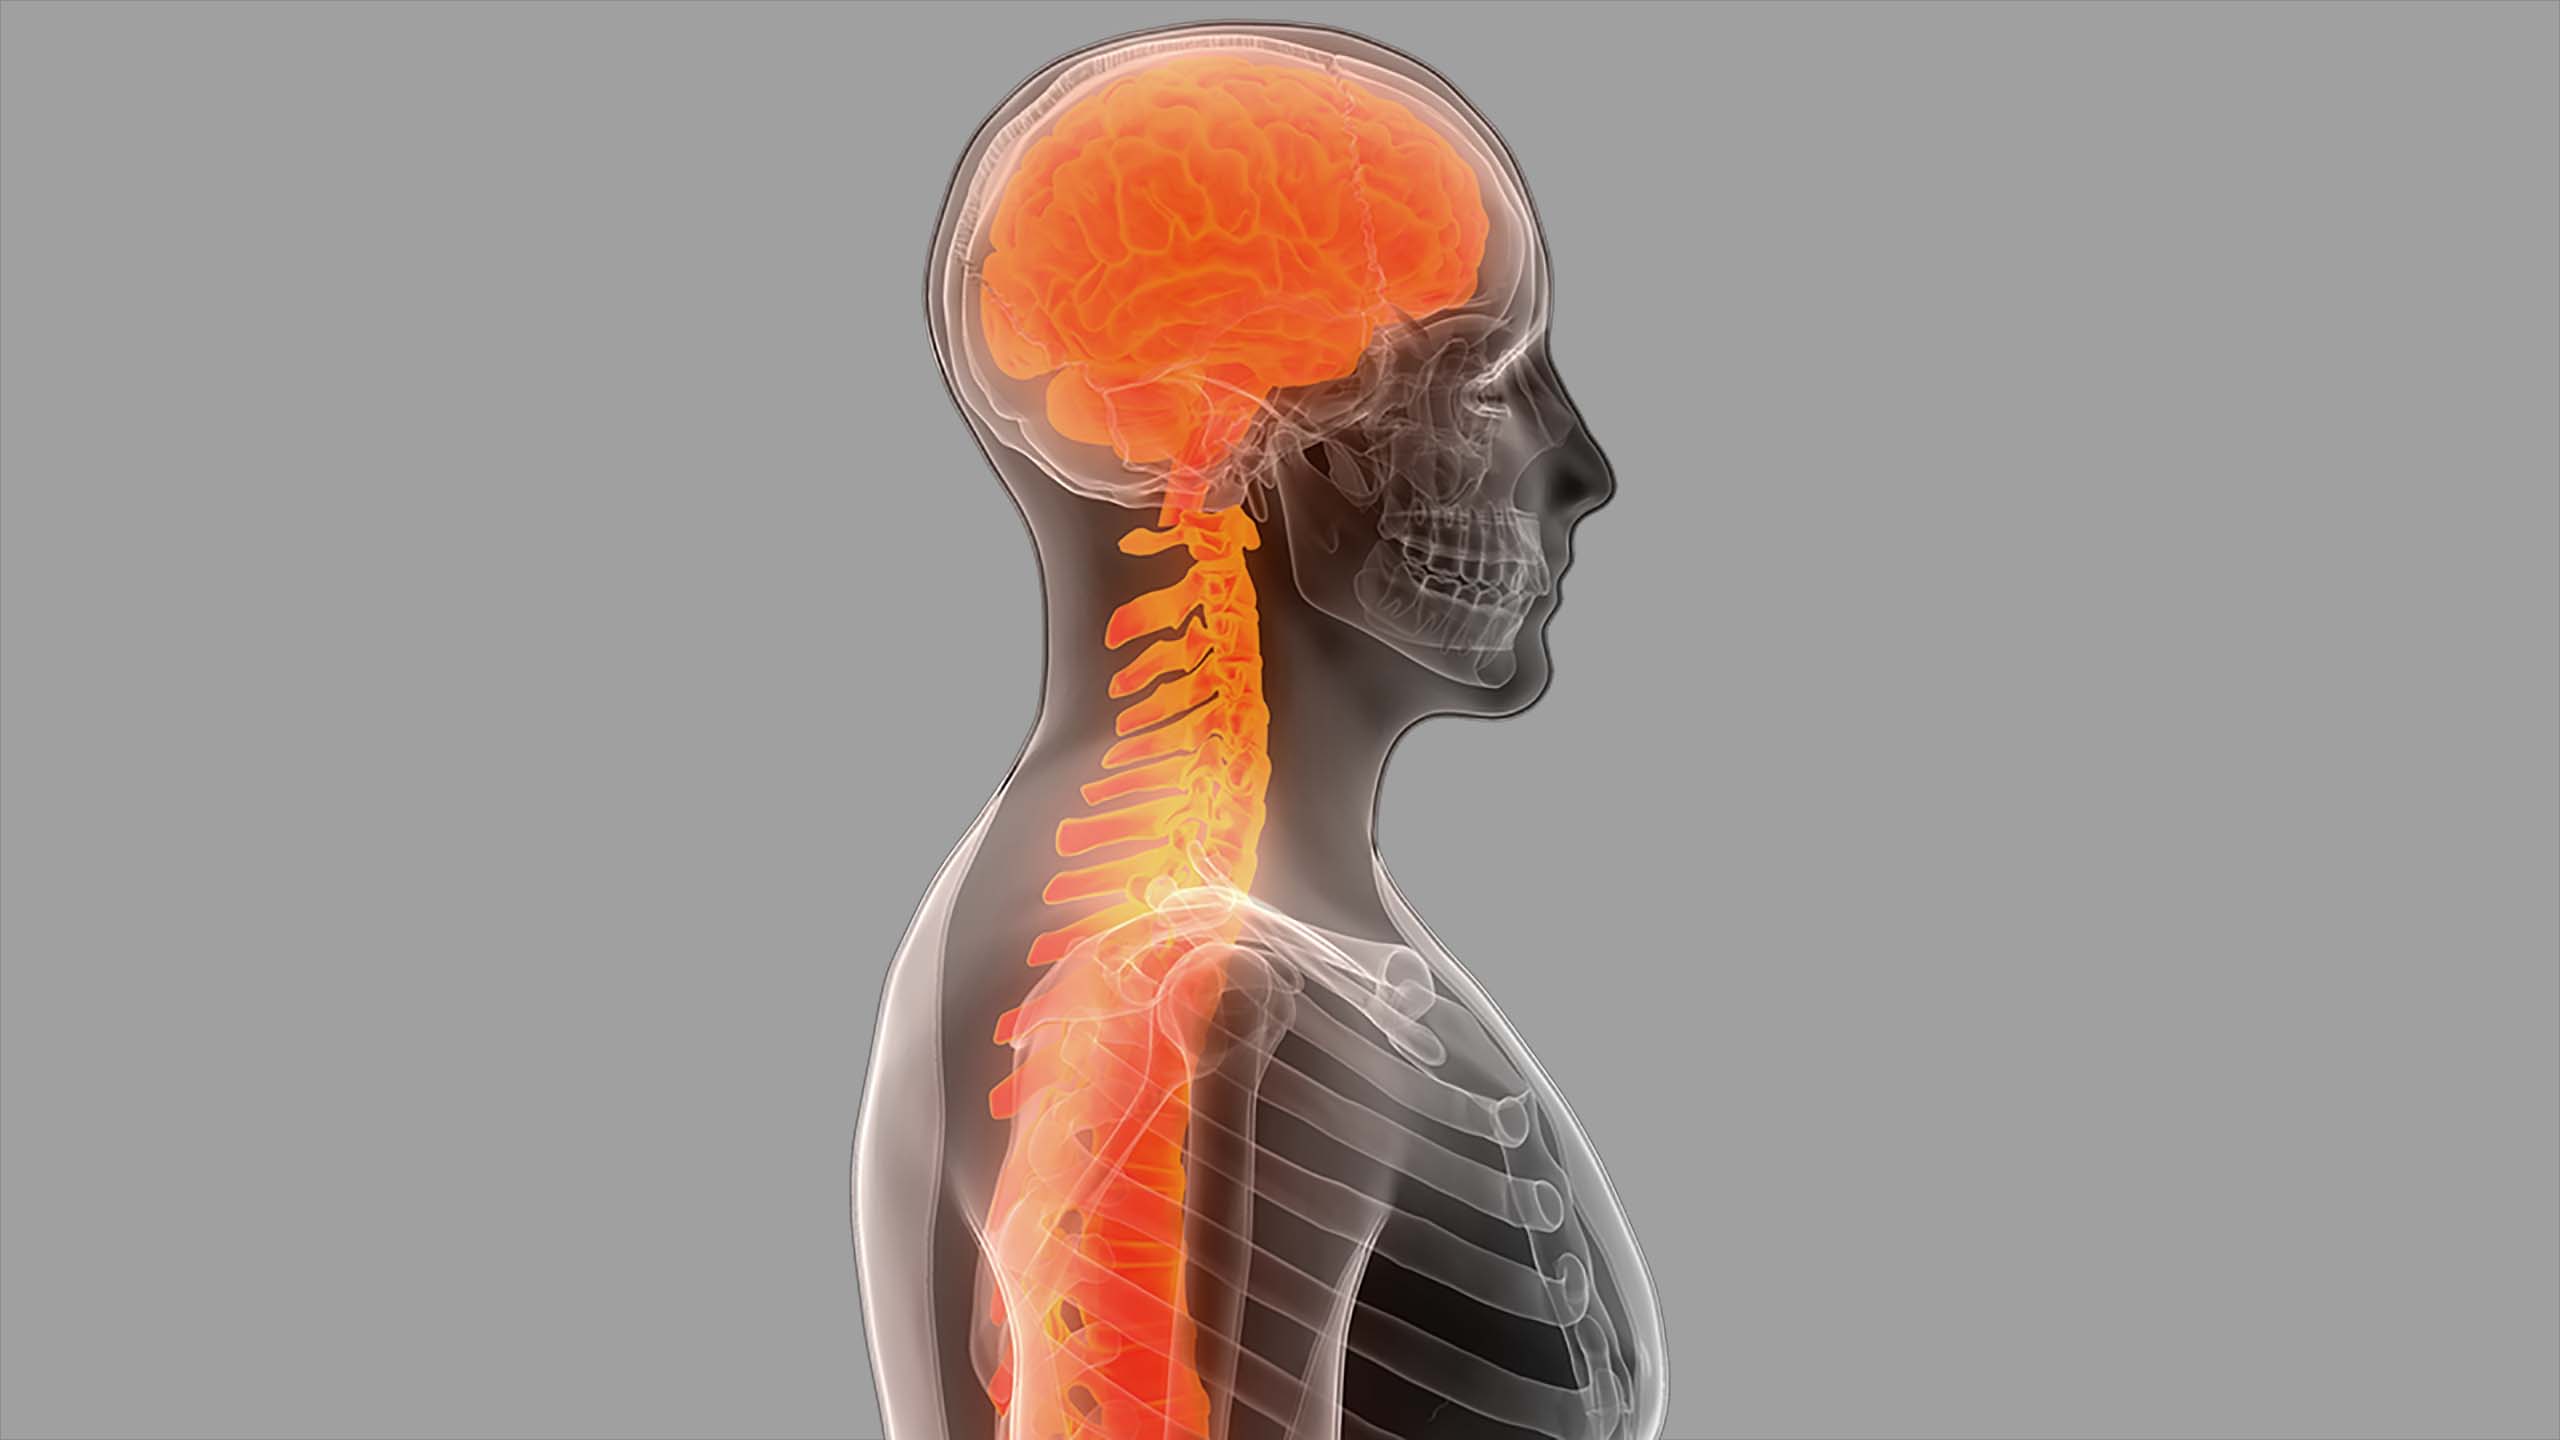 Gehirn und Rückenmak in einem menschlichem Skelett